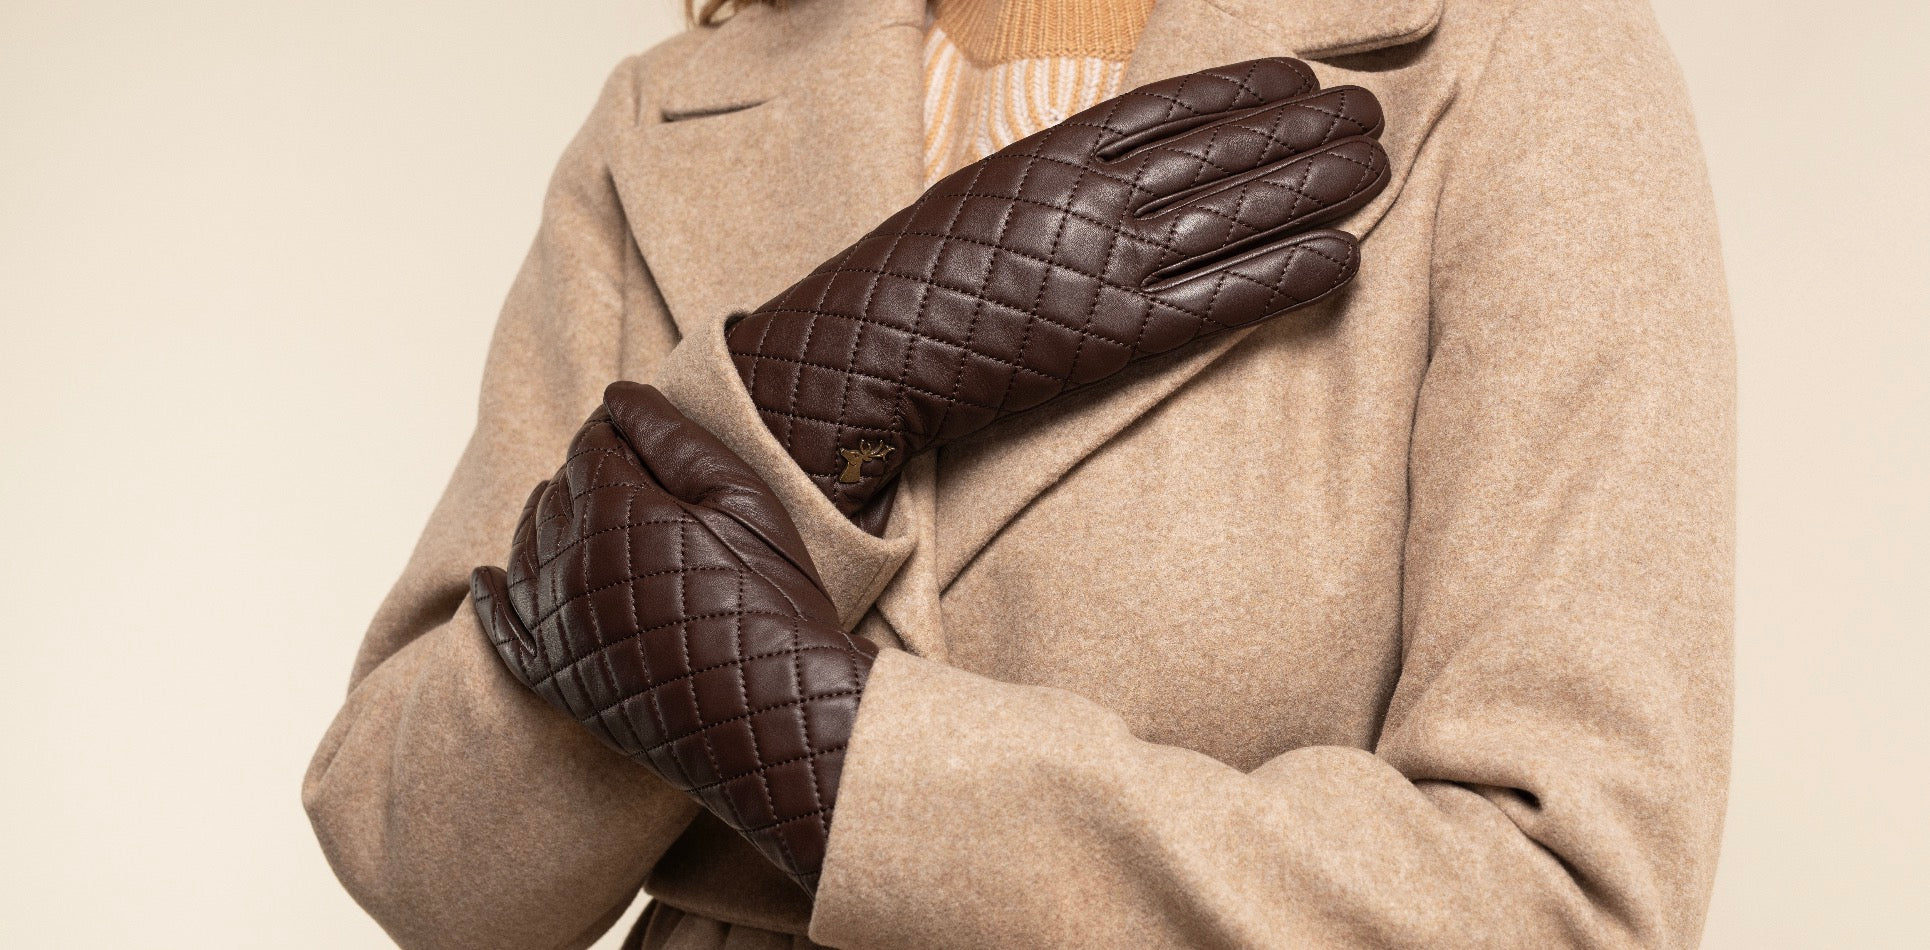 How warm are leather gloves? - Premium Leather Gloves - Schwartz & von Halen